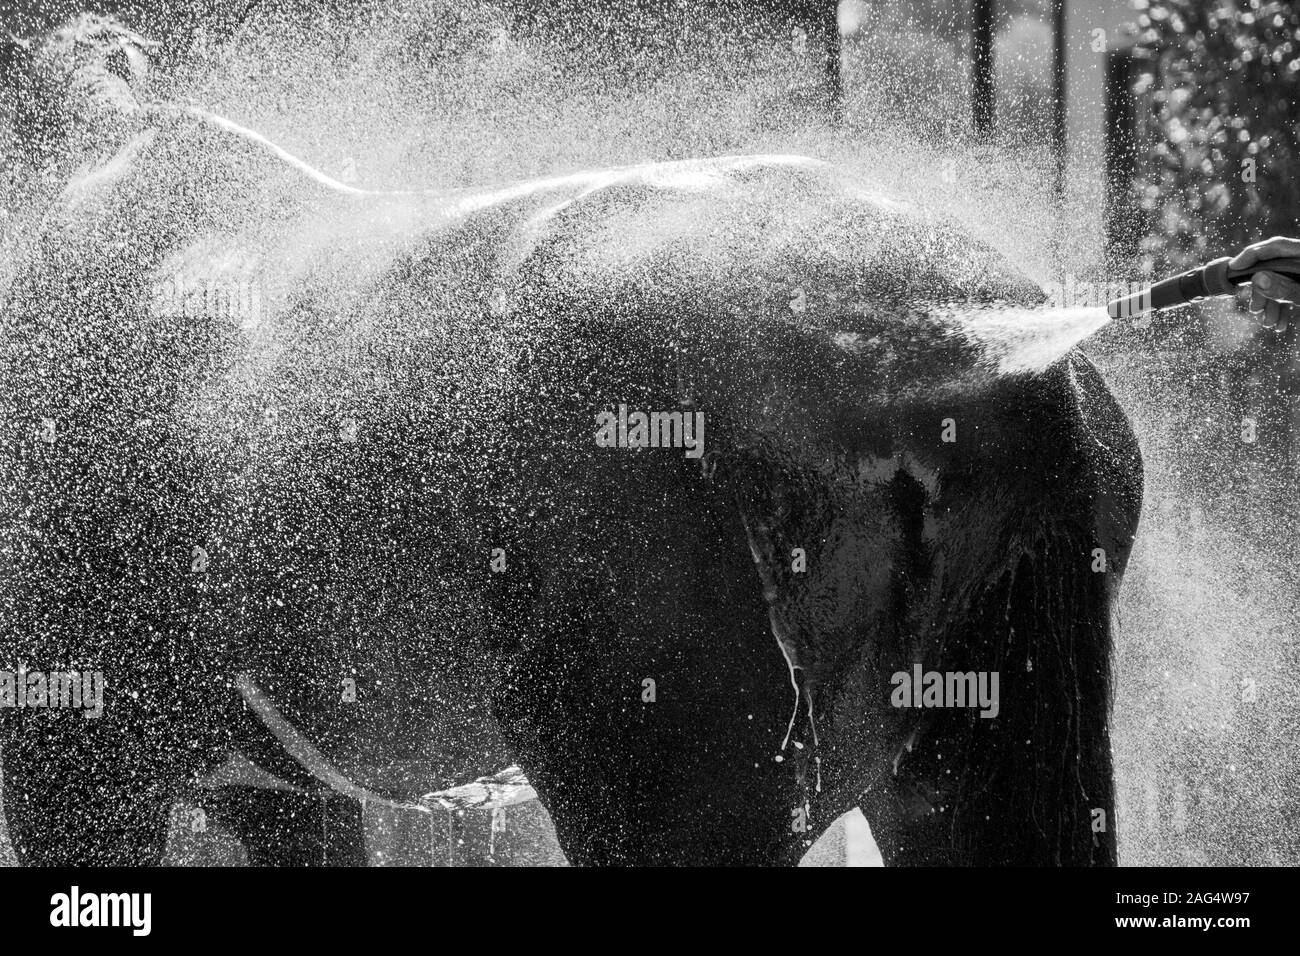 Immagine in scala di grigi di uno Stallion che si gode la fresca spruzzata di acqua Foto Stock